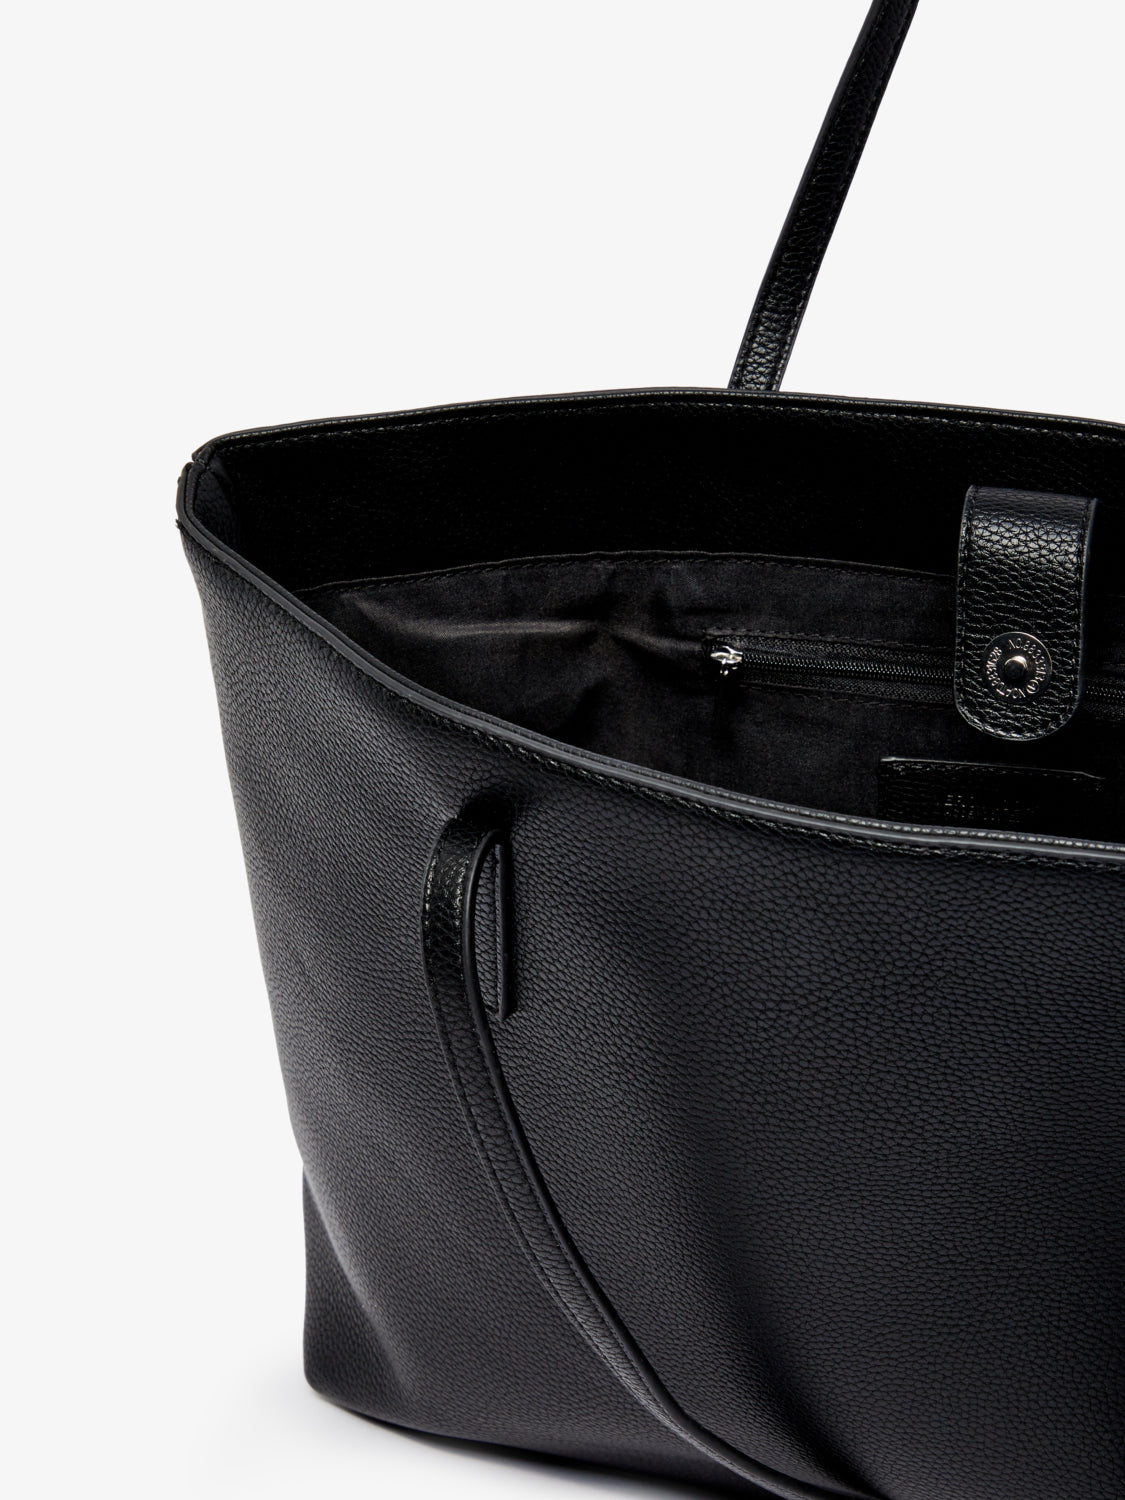 VMASTA Handbag - Black